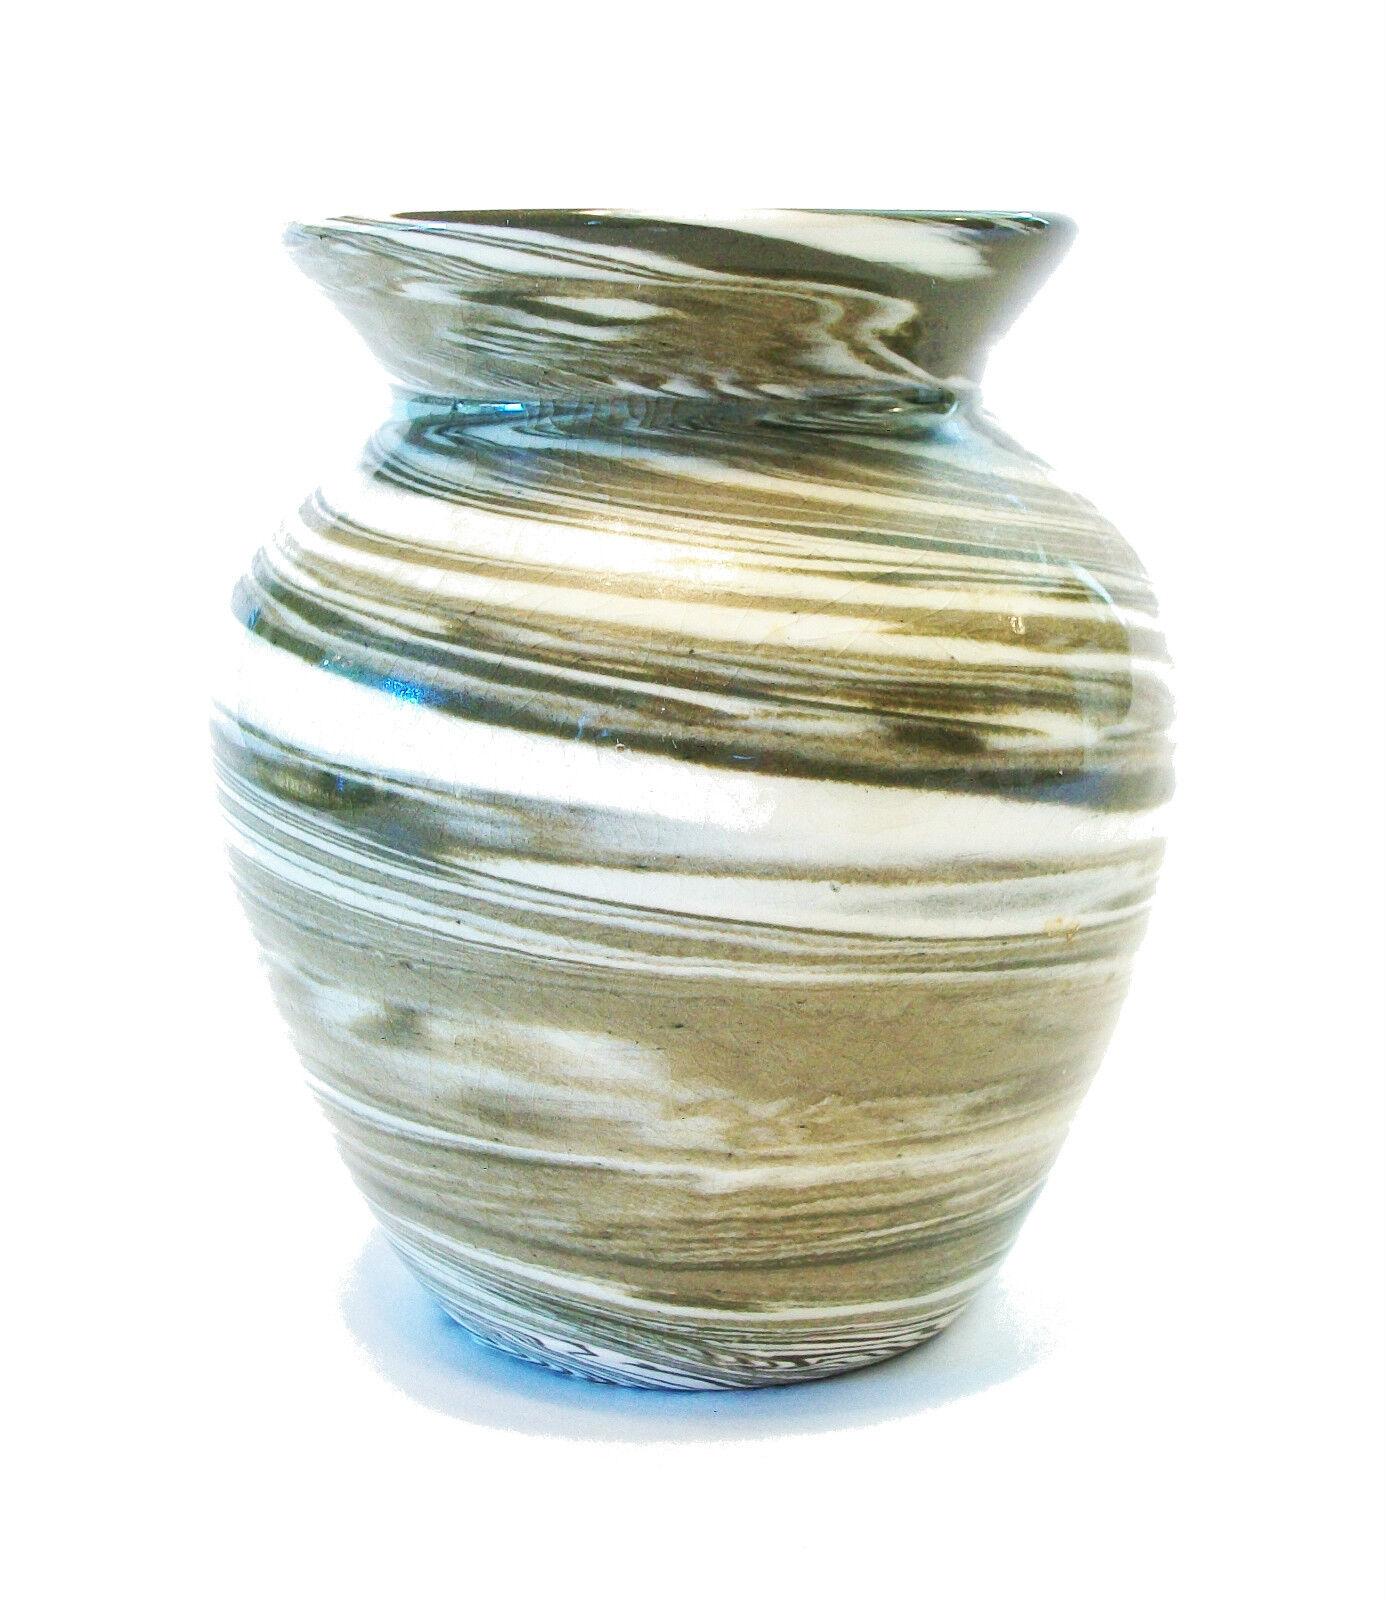 COUNTRY LIFE POTTERY - Vintage Studio Pottery Agateware Vase - Rad gedreht mit klarer Glasur - original Aufkleber auf dem Boden - Vintage Fotokopie mit der Geschichte der Vase und Hersteller - Vereinigtes Königreich (Cornwall) - ca.